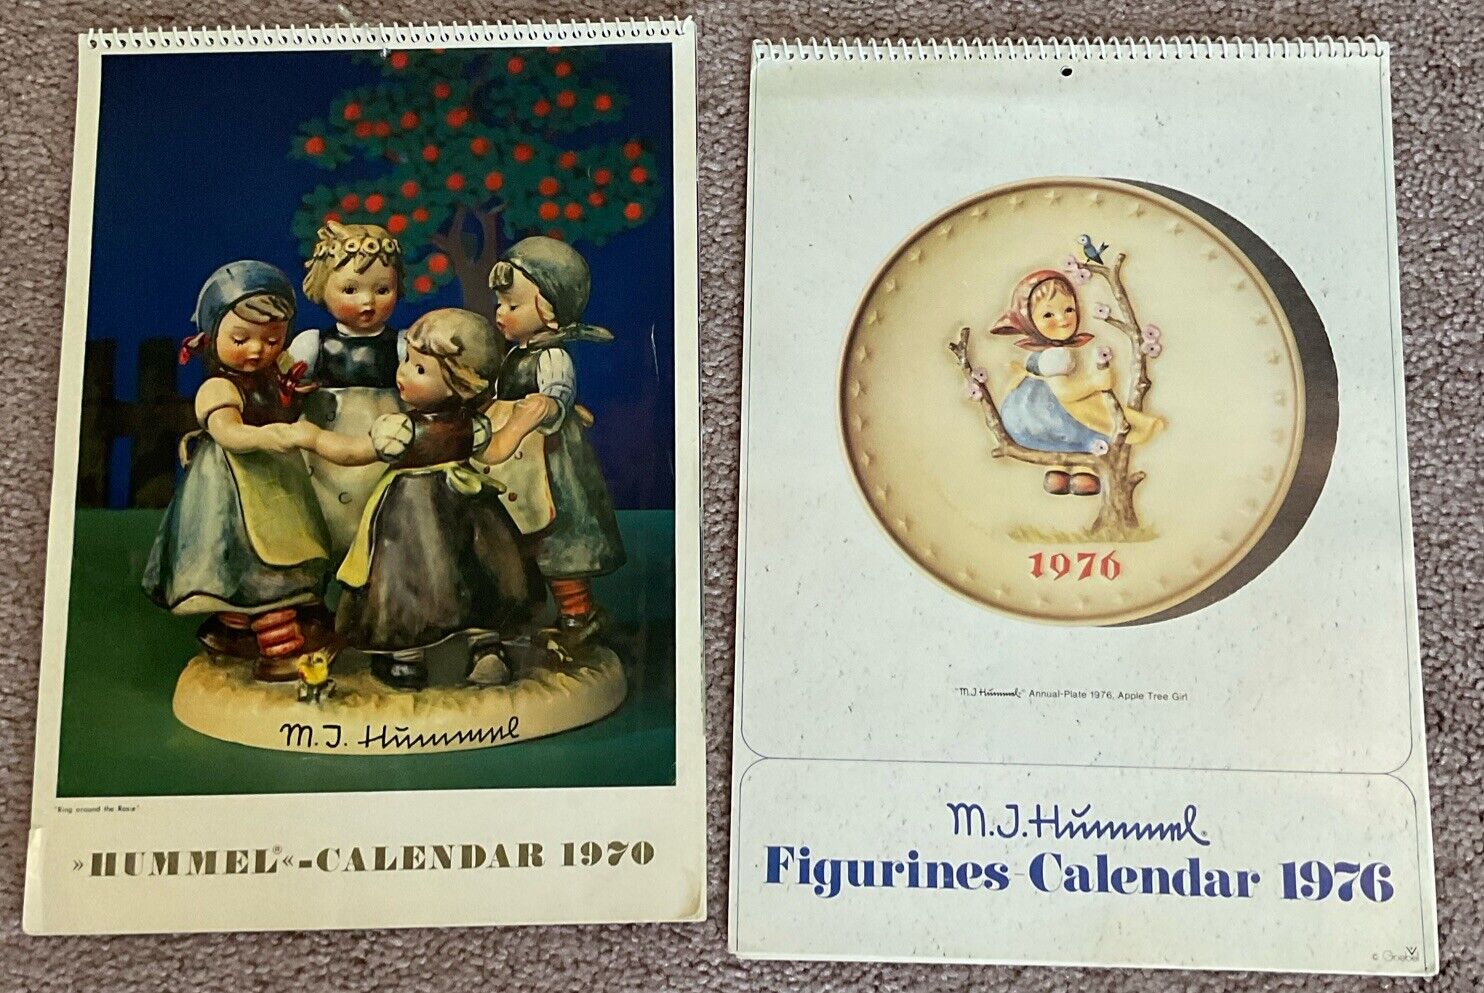 Hummel Assorted Calendars, Collectors Log, Hummel Catalog, 1960’s Price Lists